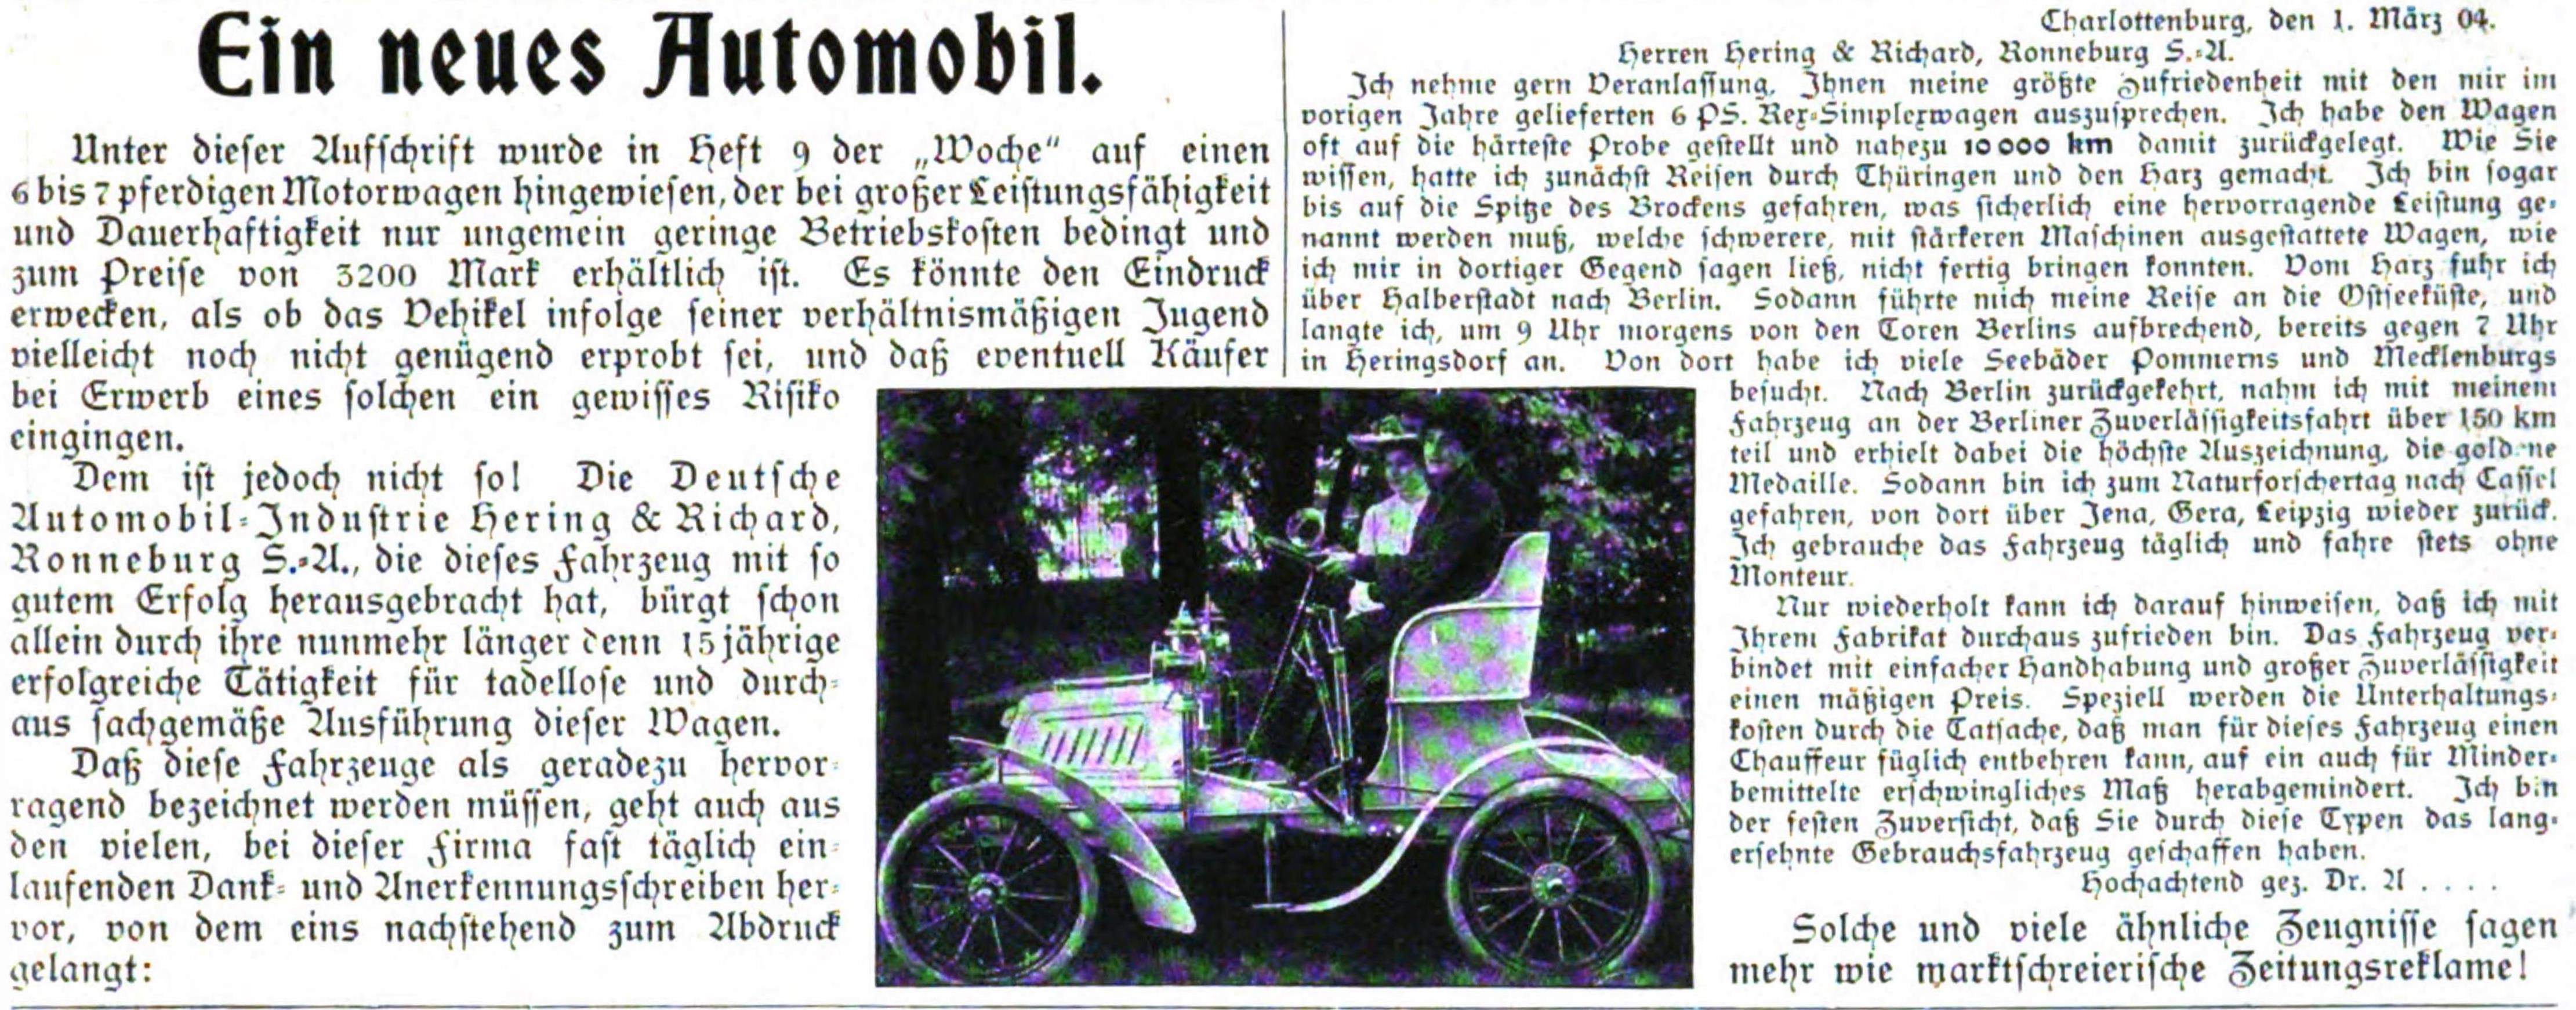 Deutsche Automobil Industrie 1904 108.jpg